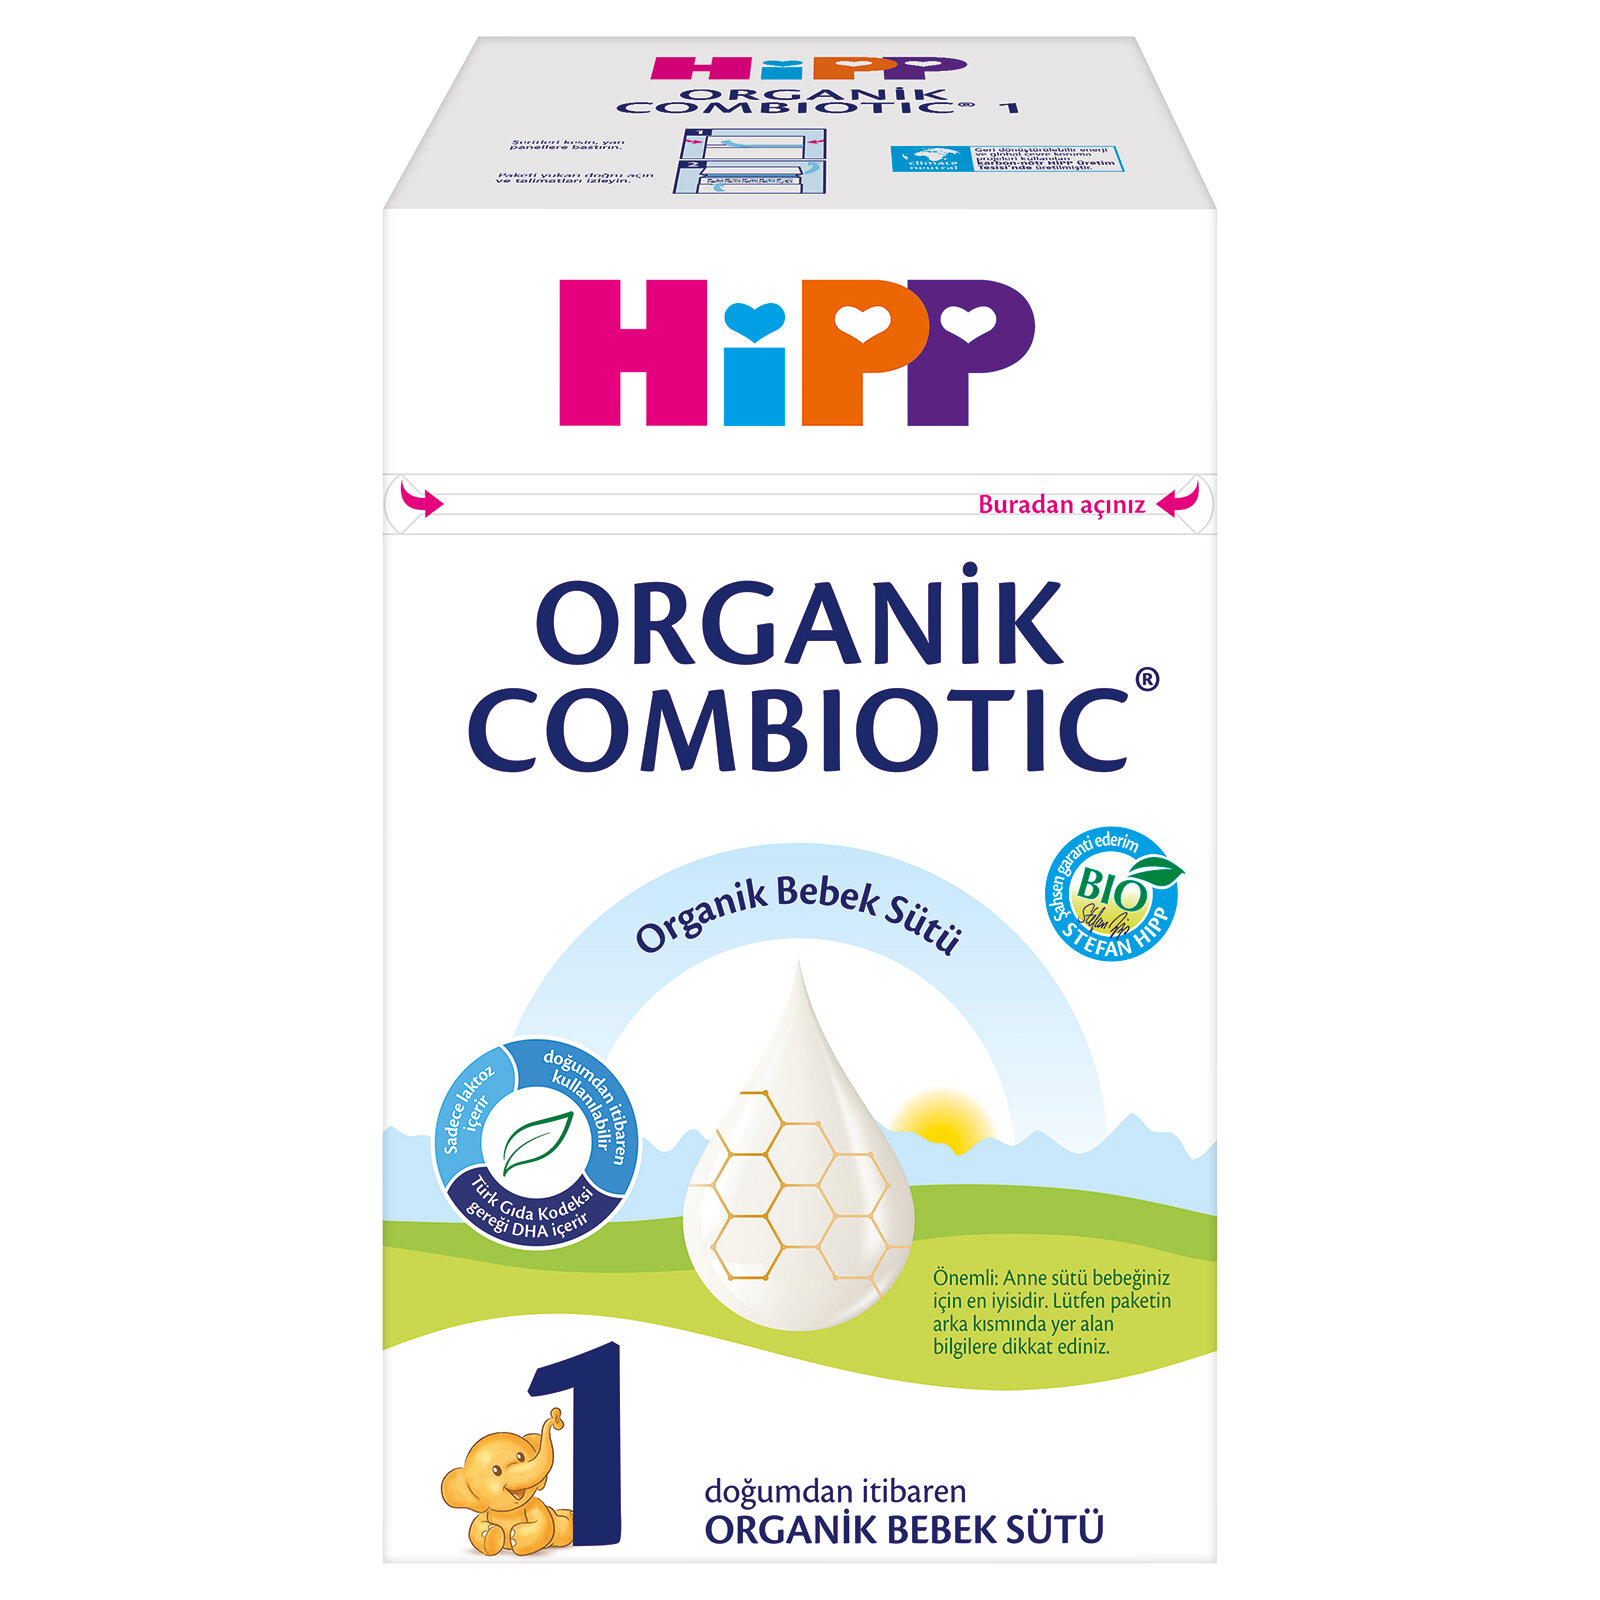 1 Organik Combiotic Bebek Sütü 800 gr 0-6 Ay